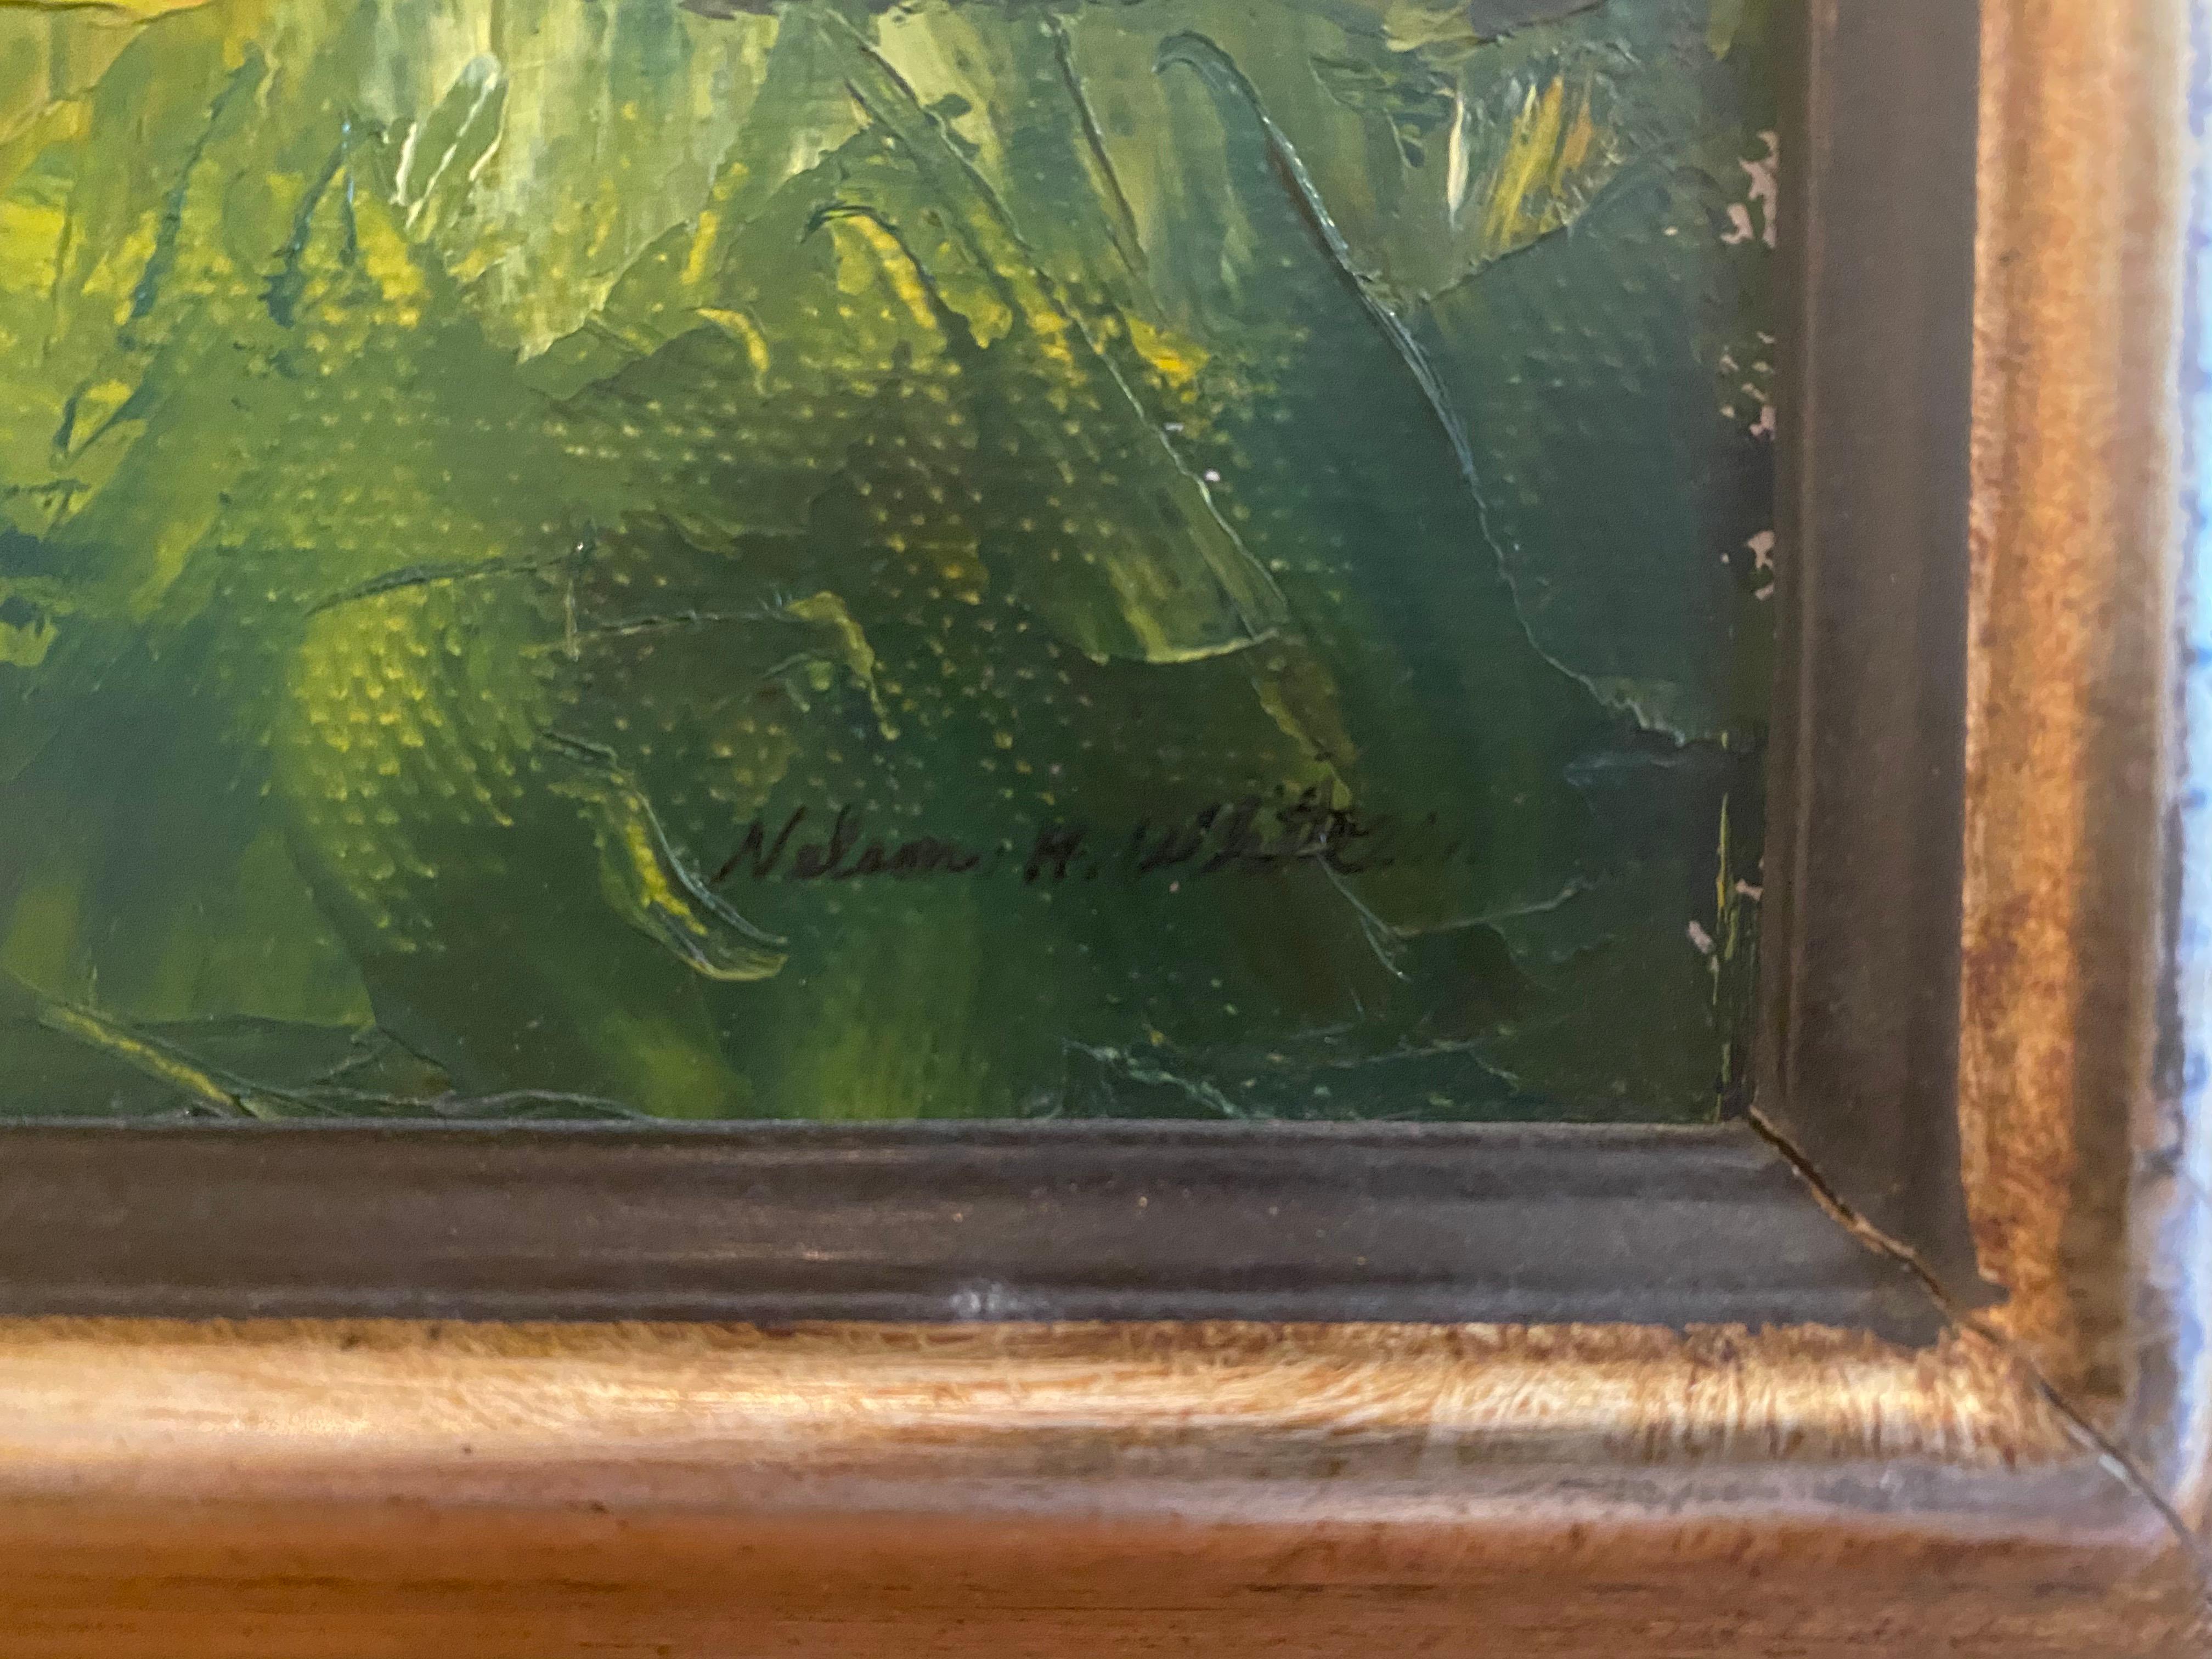 Peint en plein air. 

Dimensions du cadre :  17 x 21 pouces

Biographie de l'artiste :
Nelson H. Whiting est né à New London, dans le Connecticut, en 1932. Whiting a été entouré d'art et d'artistes dès sa naissance. Son grand-père, Henry Cooke White